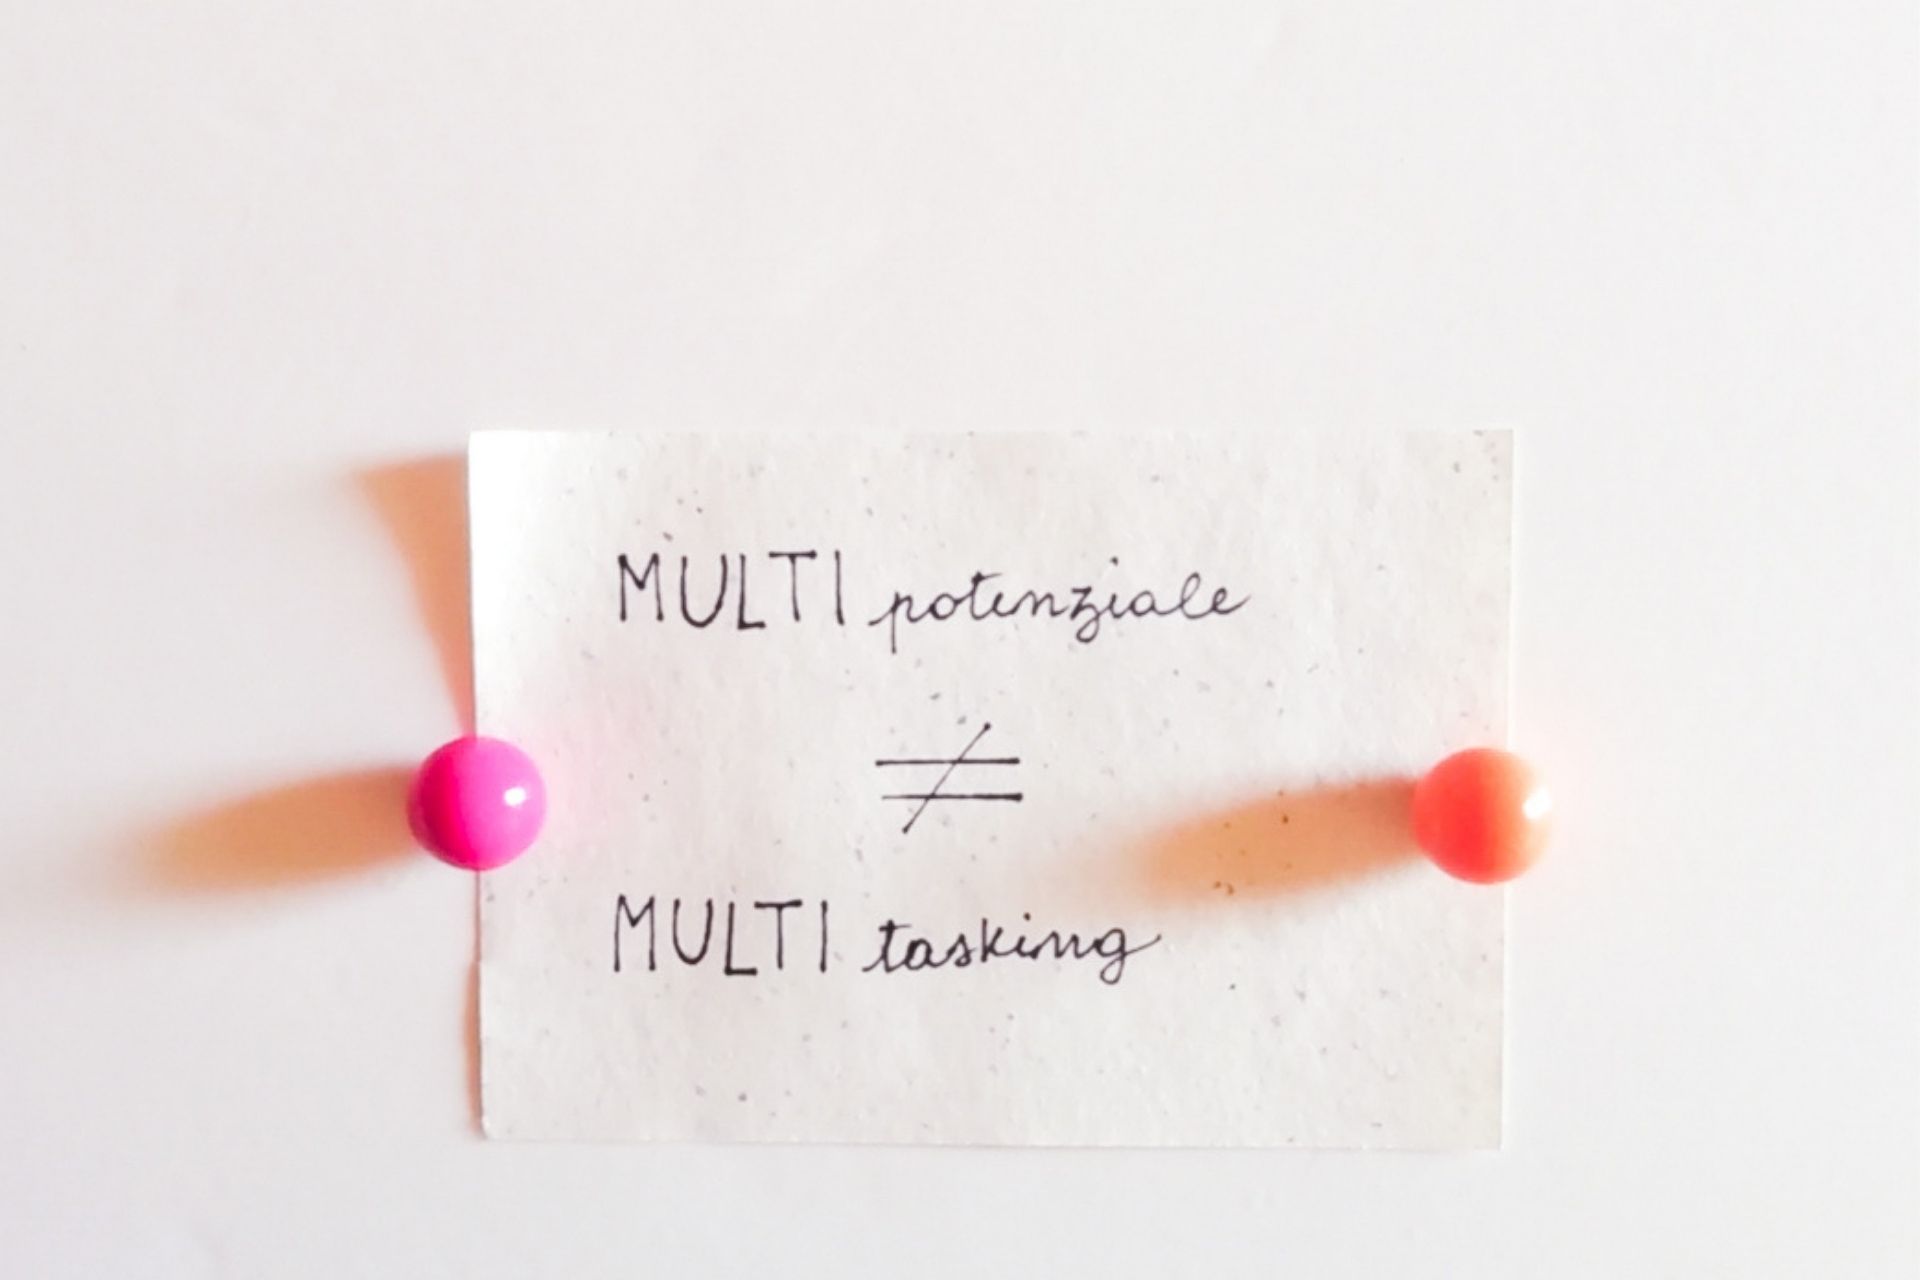 Multipotenziale non significa multitasking - Paroladordine